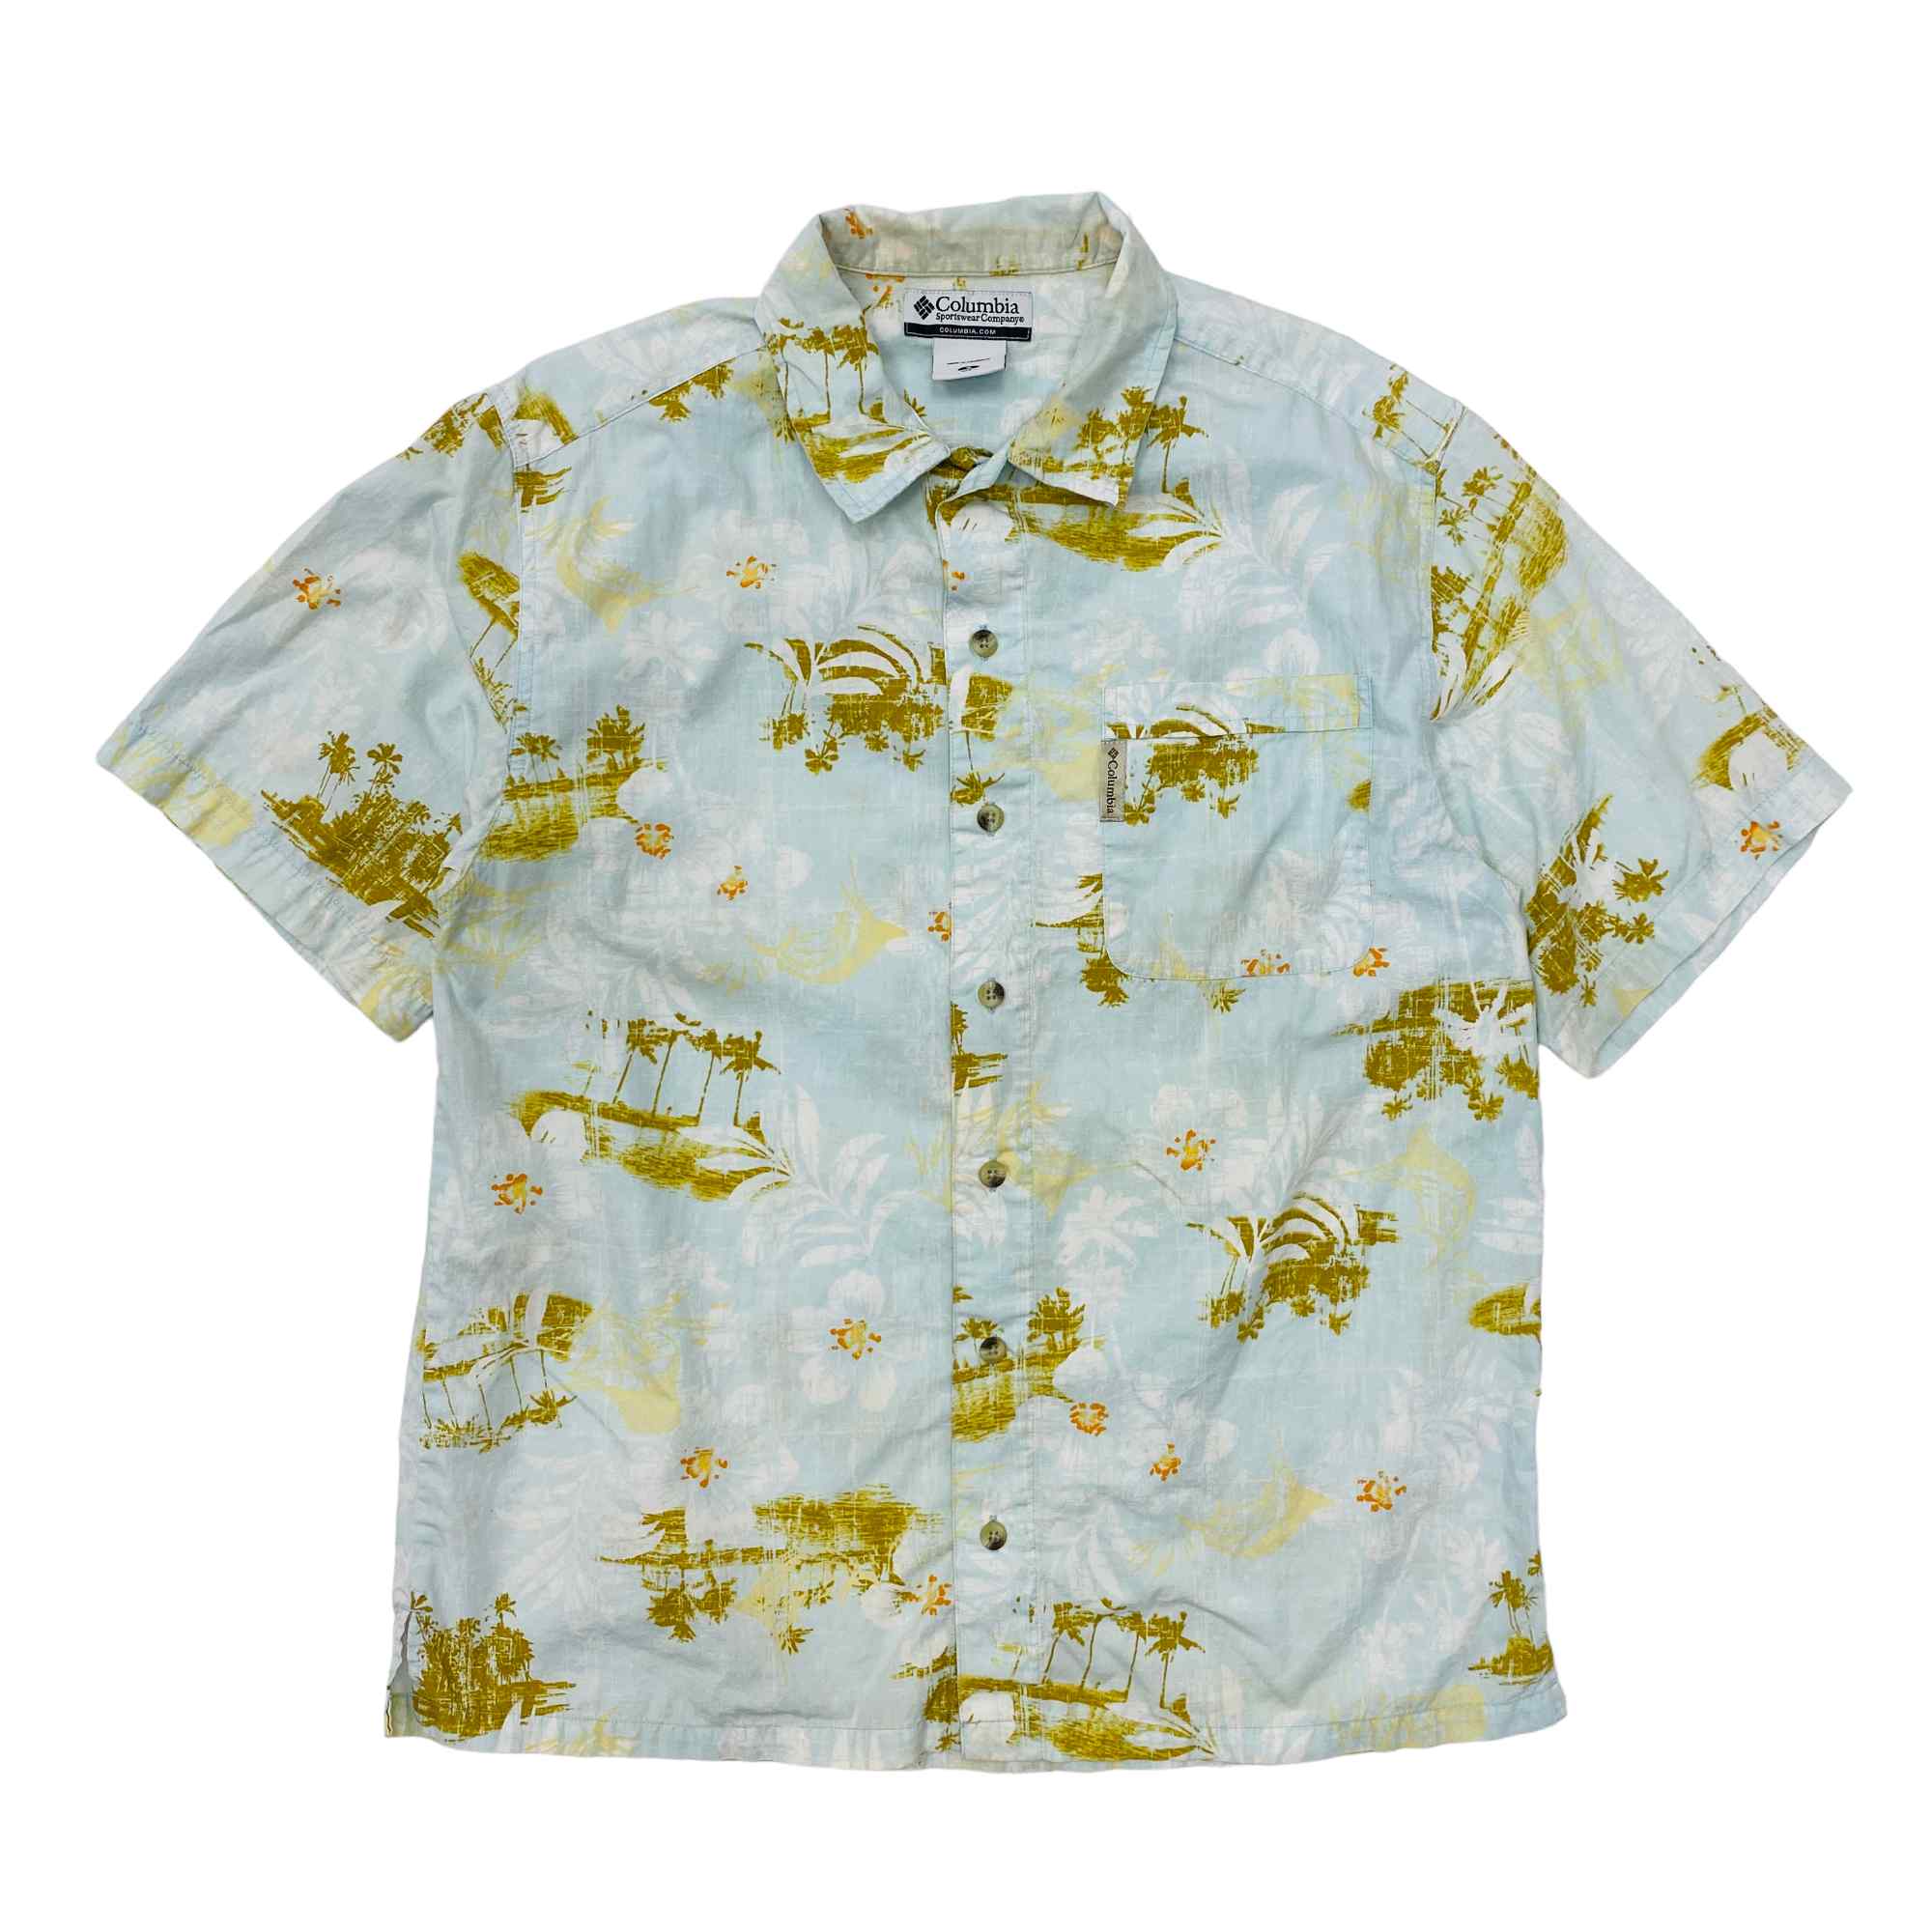 Columbia Hawaiian Shirt - Small